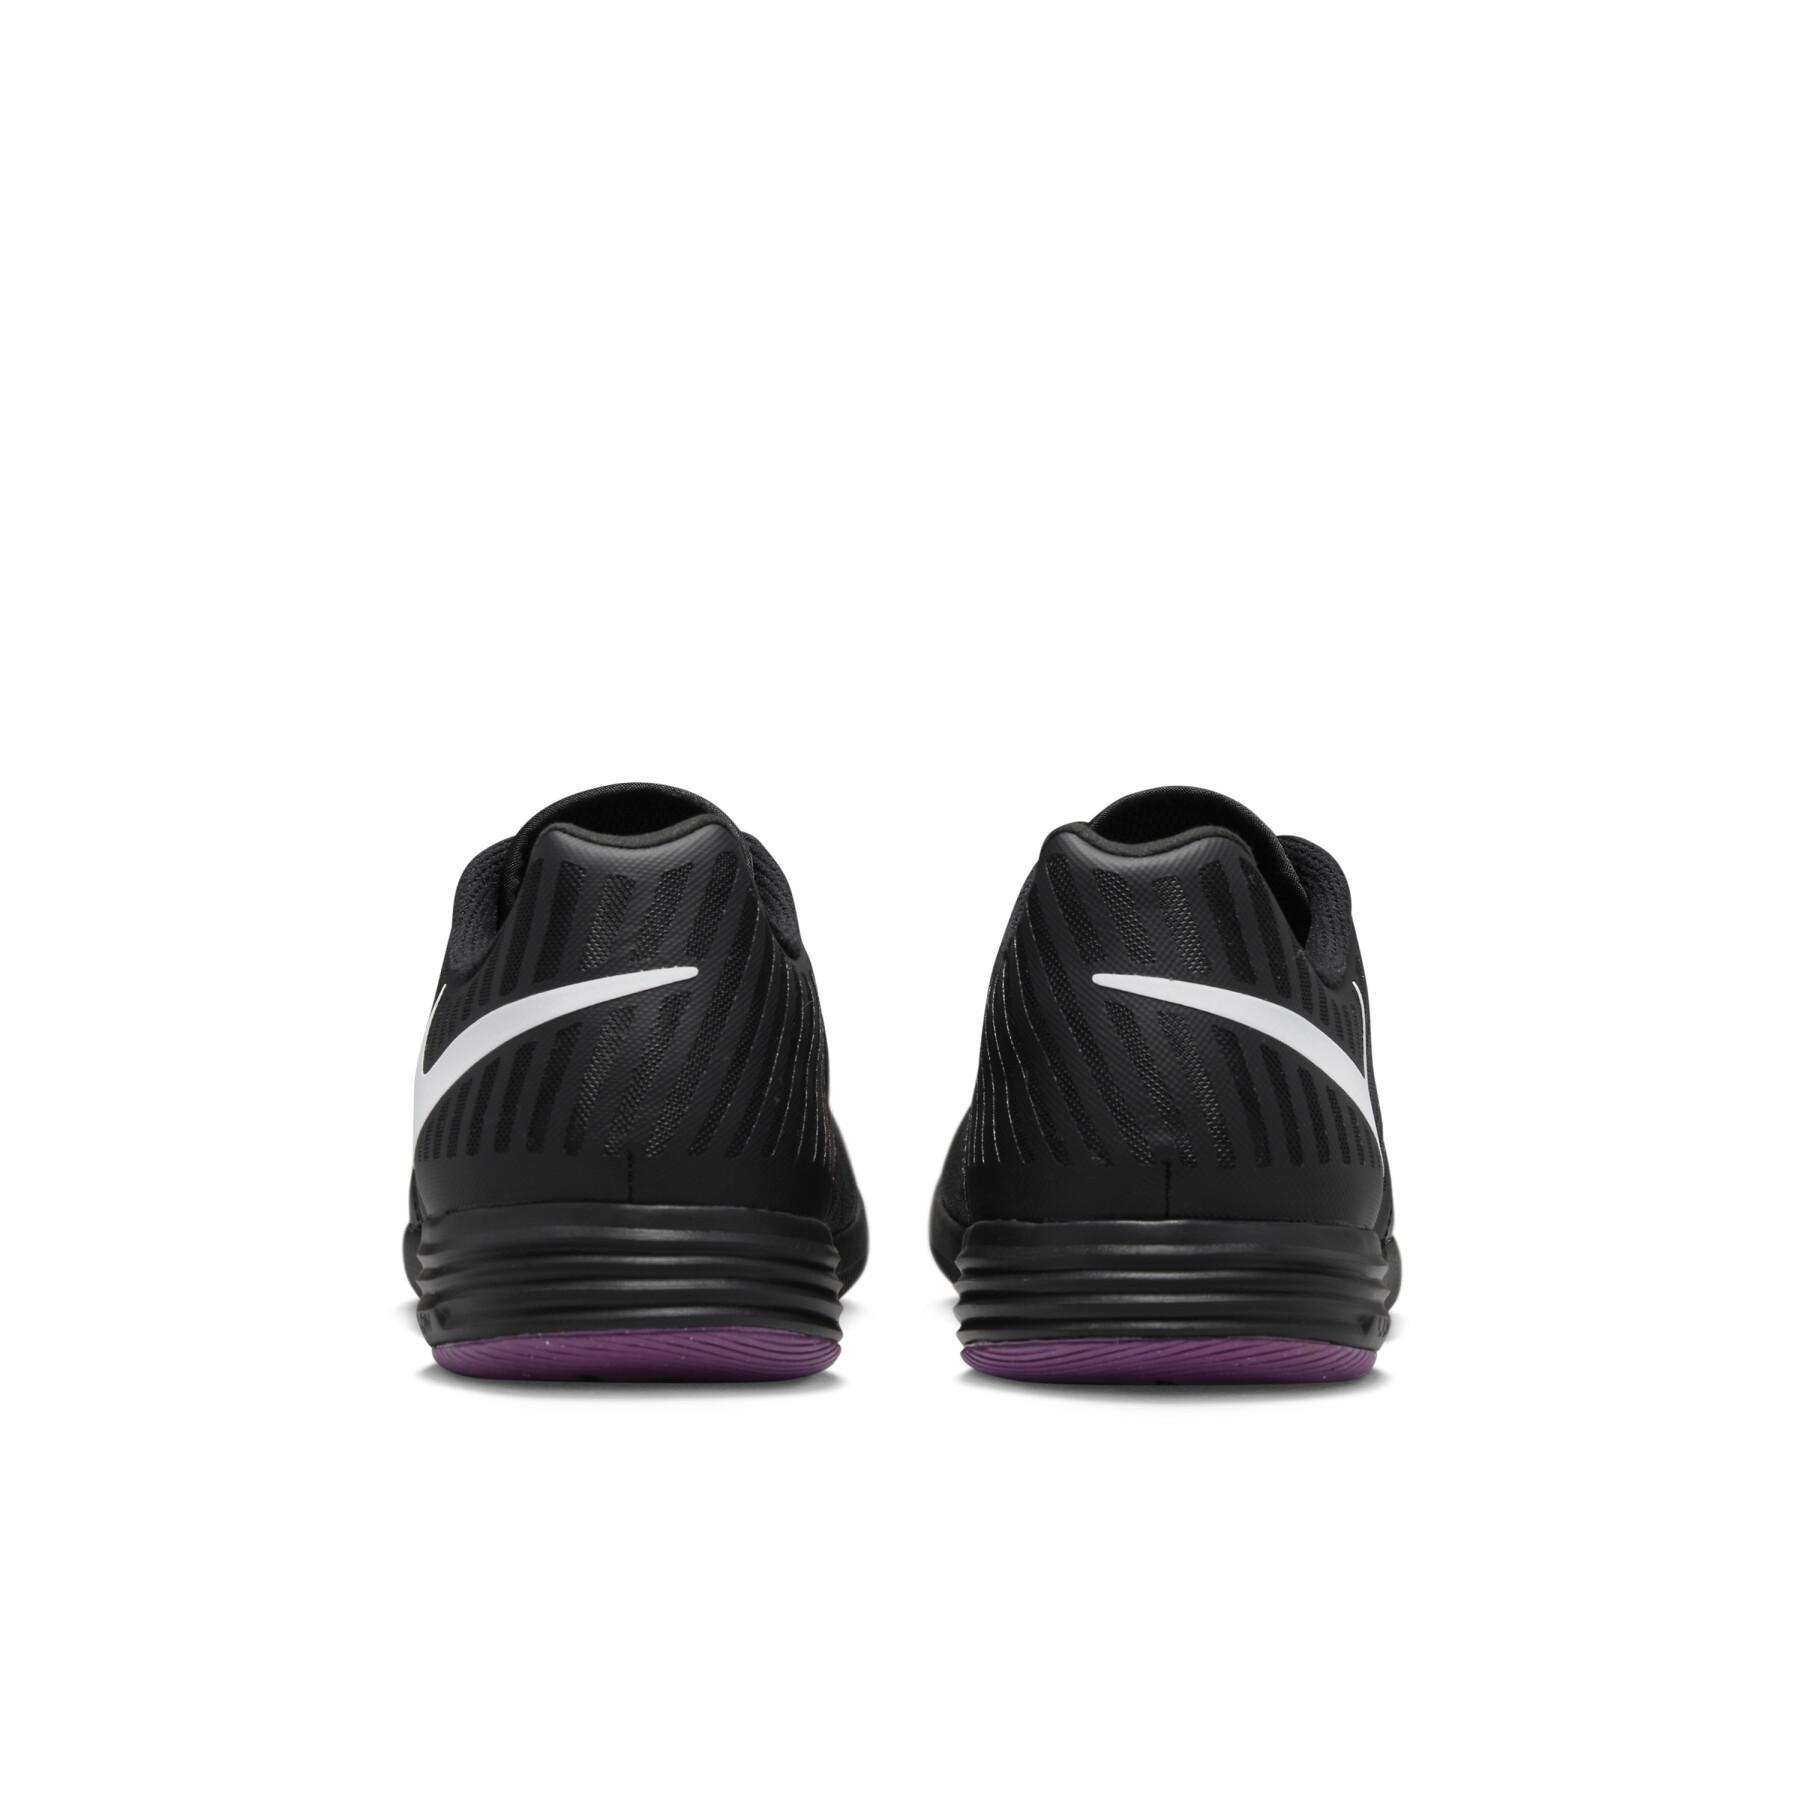 Buty piłkarskie Nike Lunar Gato II IC